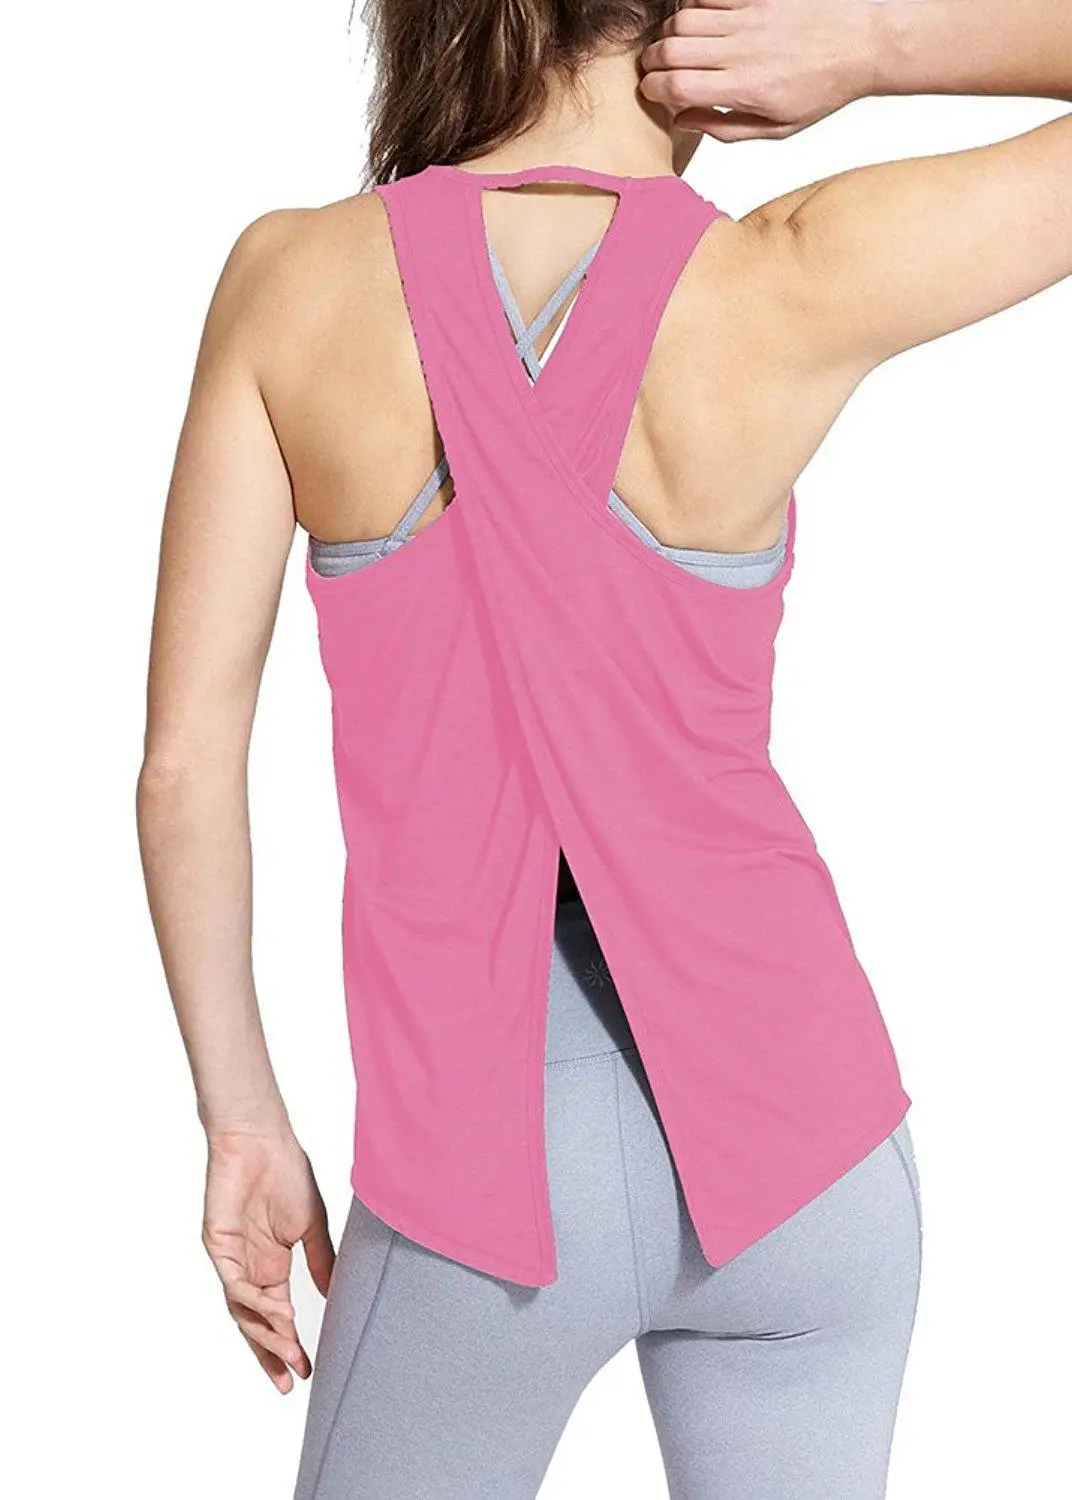 Женская футболка для спортзала, летний топ для йоги, Быстросохнущий Спортивный жилет, женская одежда для фитнеса, майка без рукавов для тренировок, спортивная одежда для бега - Цвет: pink